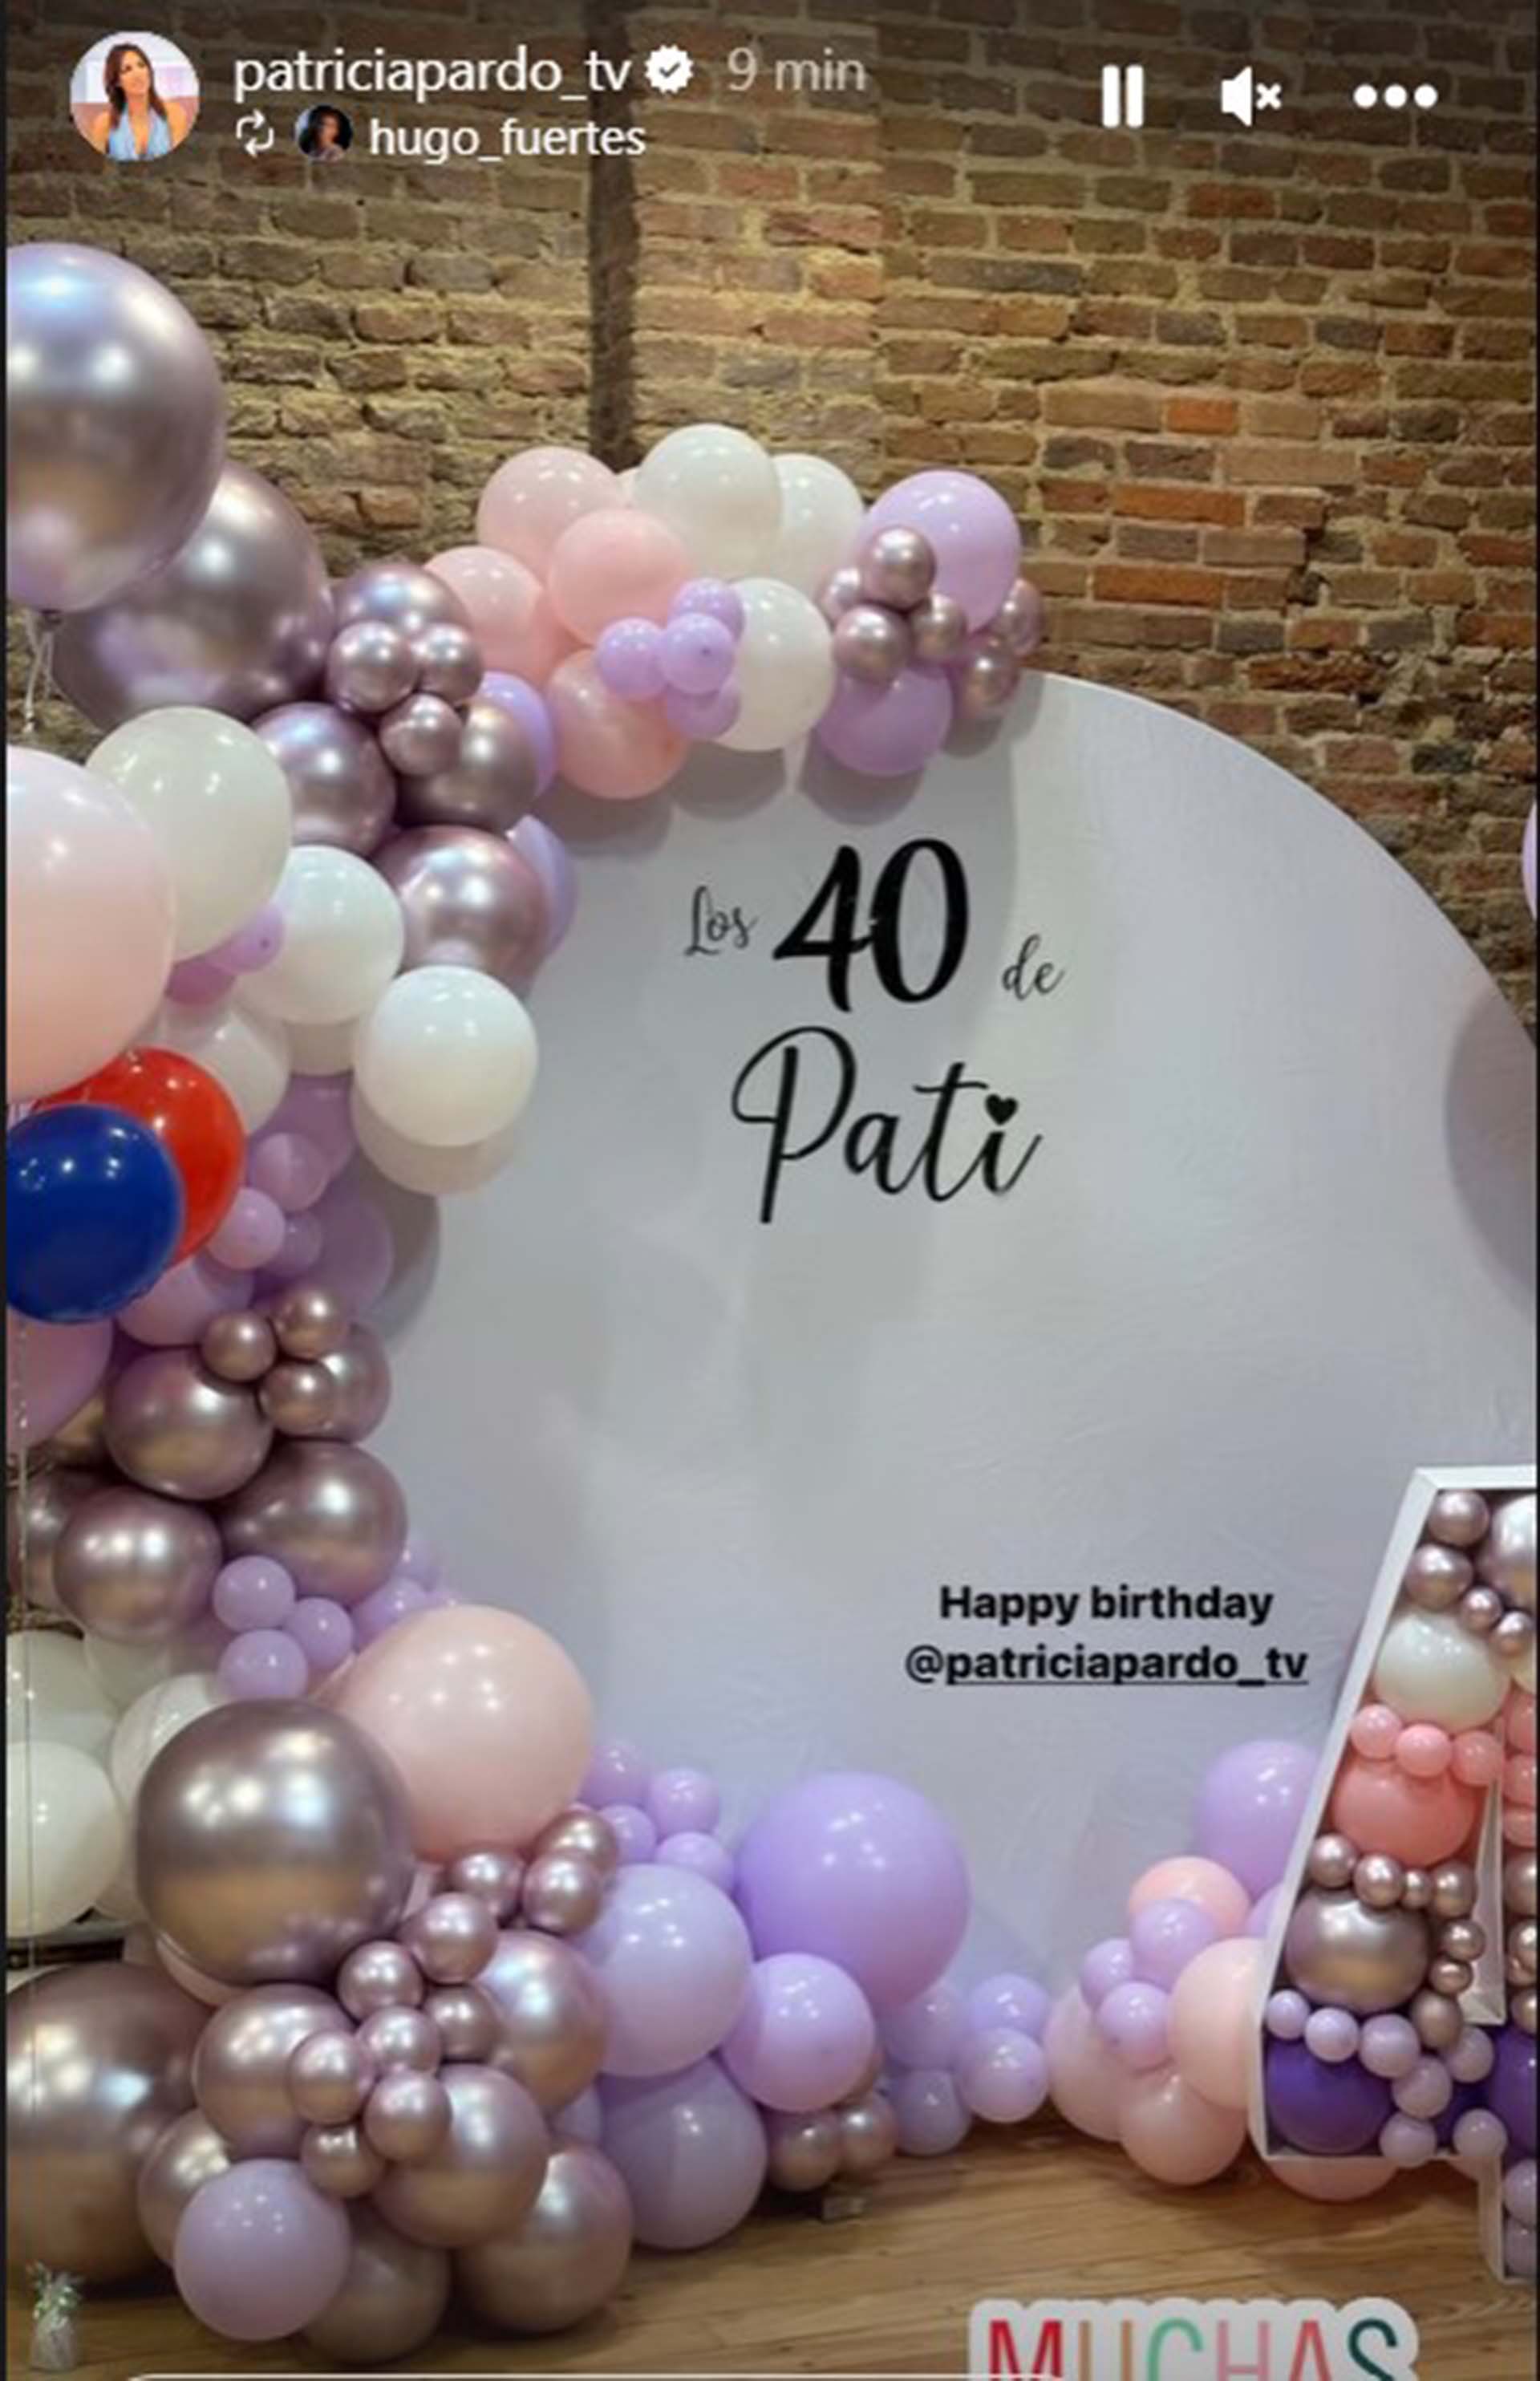 Patricia Pardo, sorprendida con una gran fiesta de cumpleaños